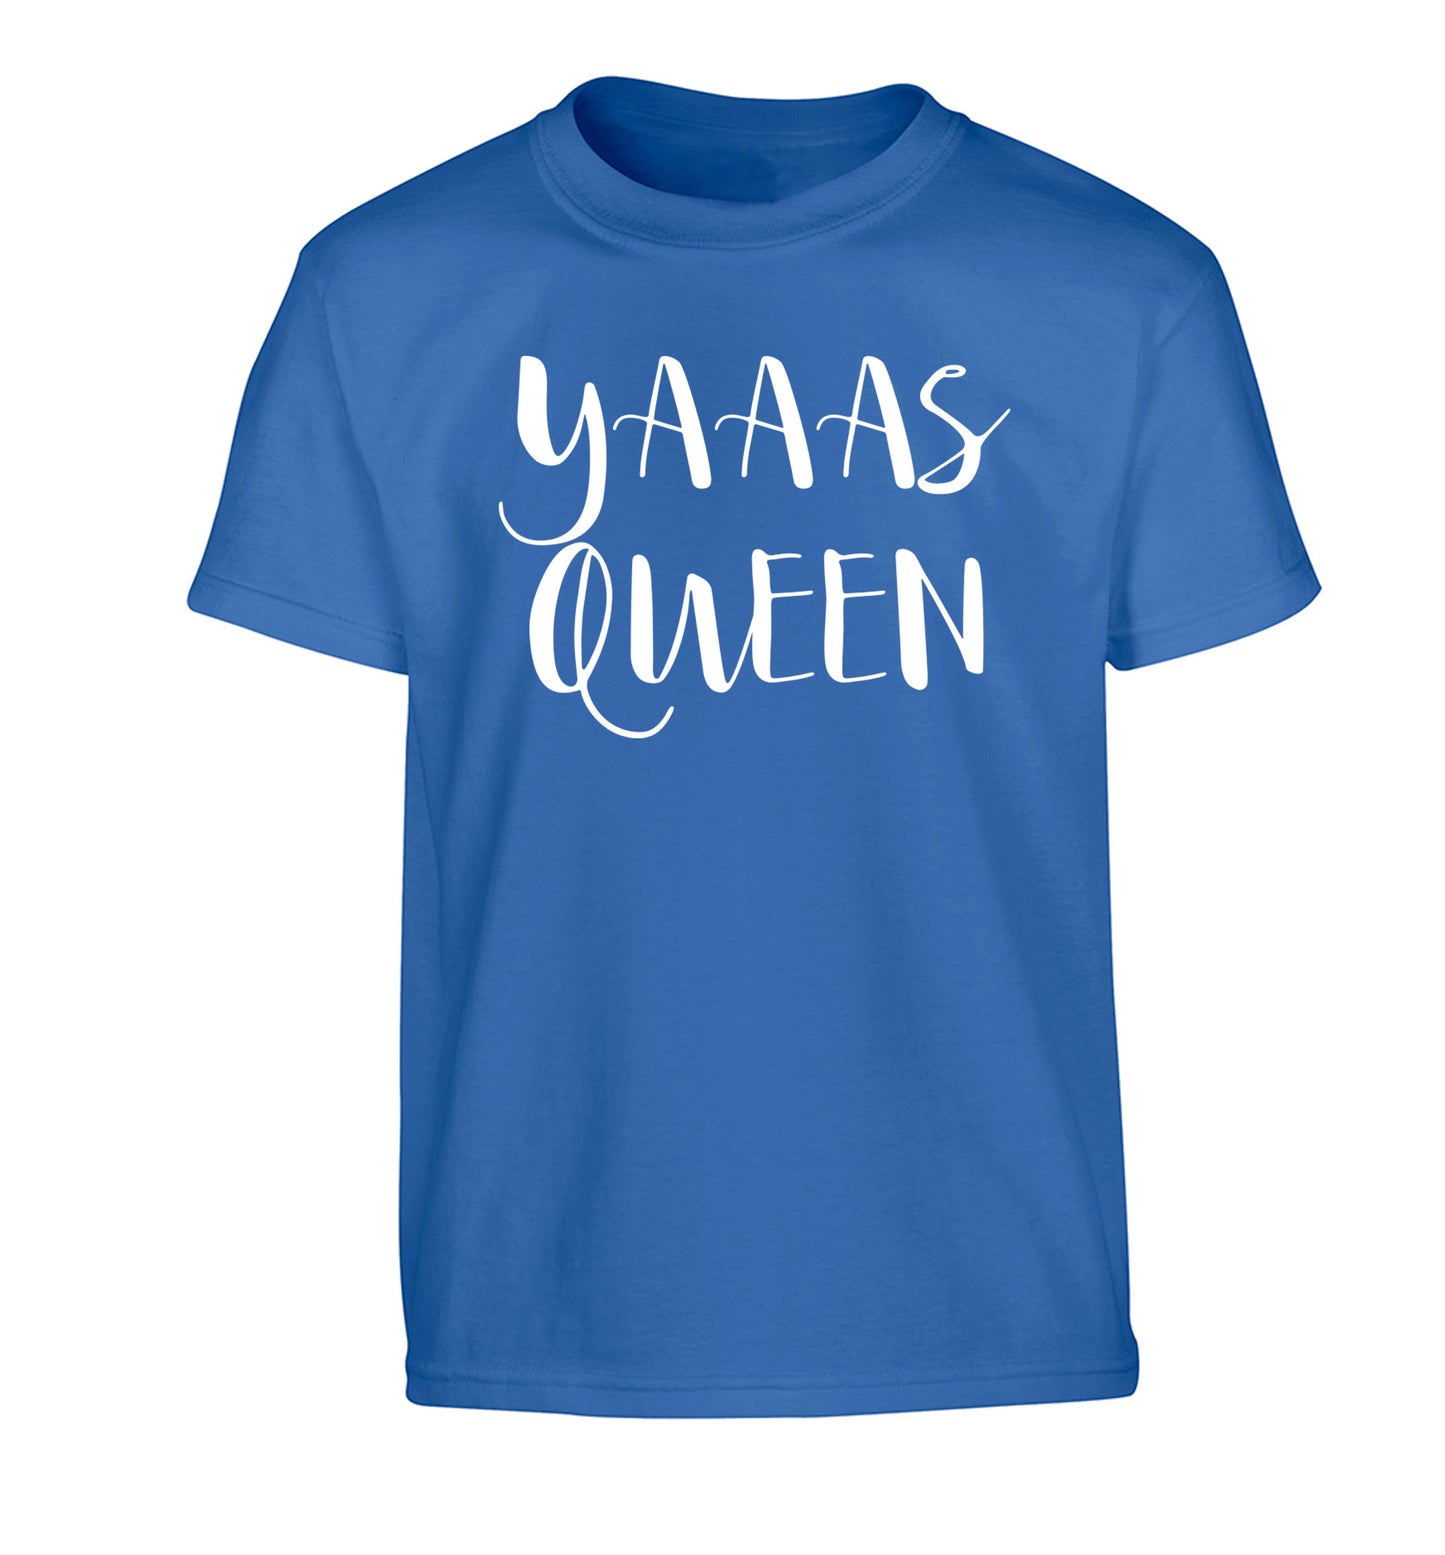 Yas Queen Children's blue Tshirt 12-14 Years